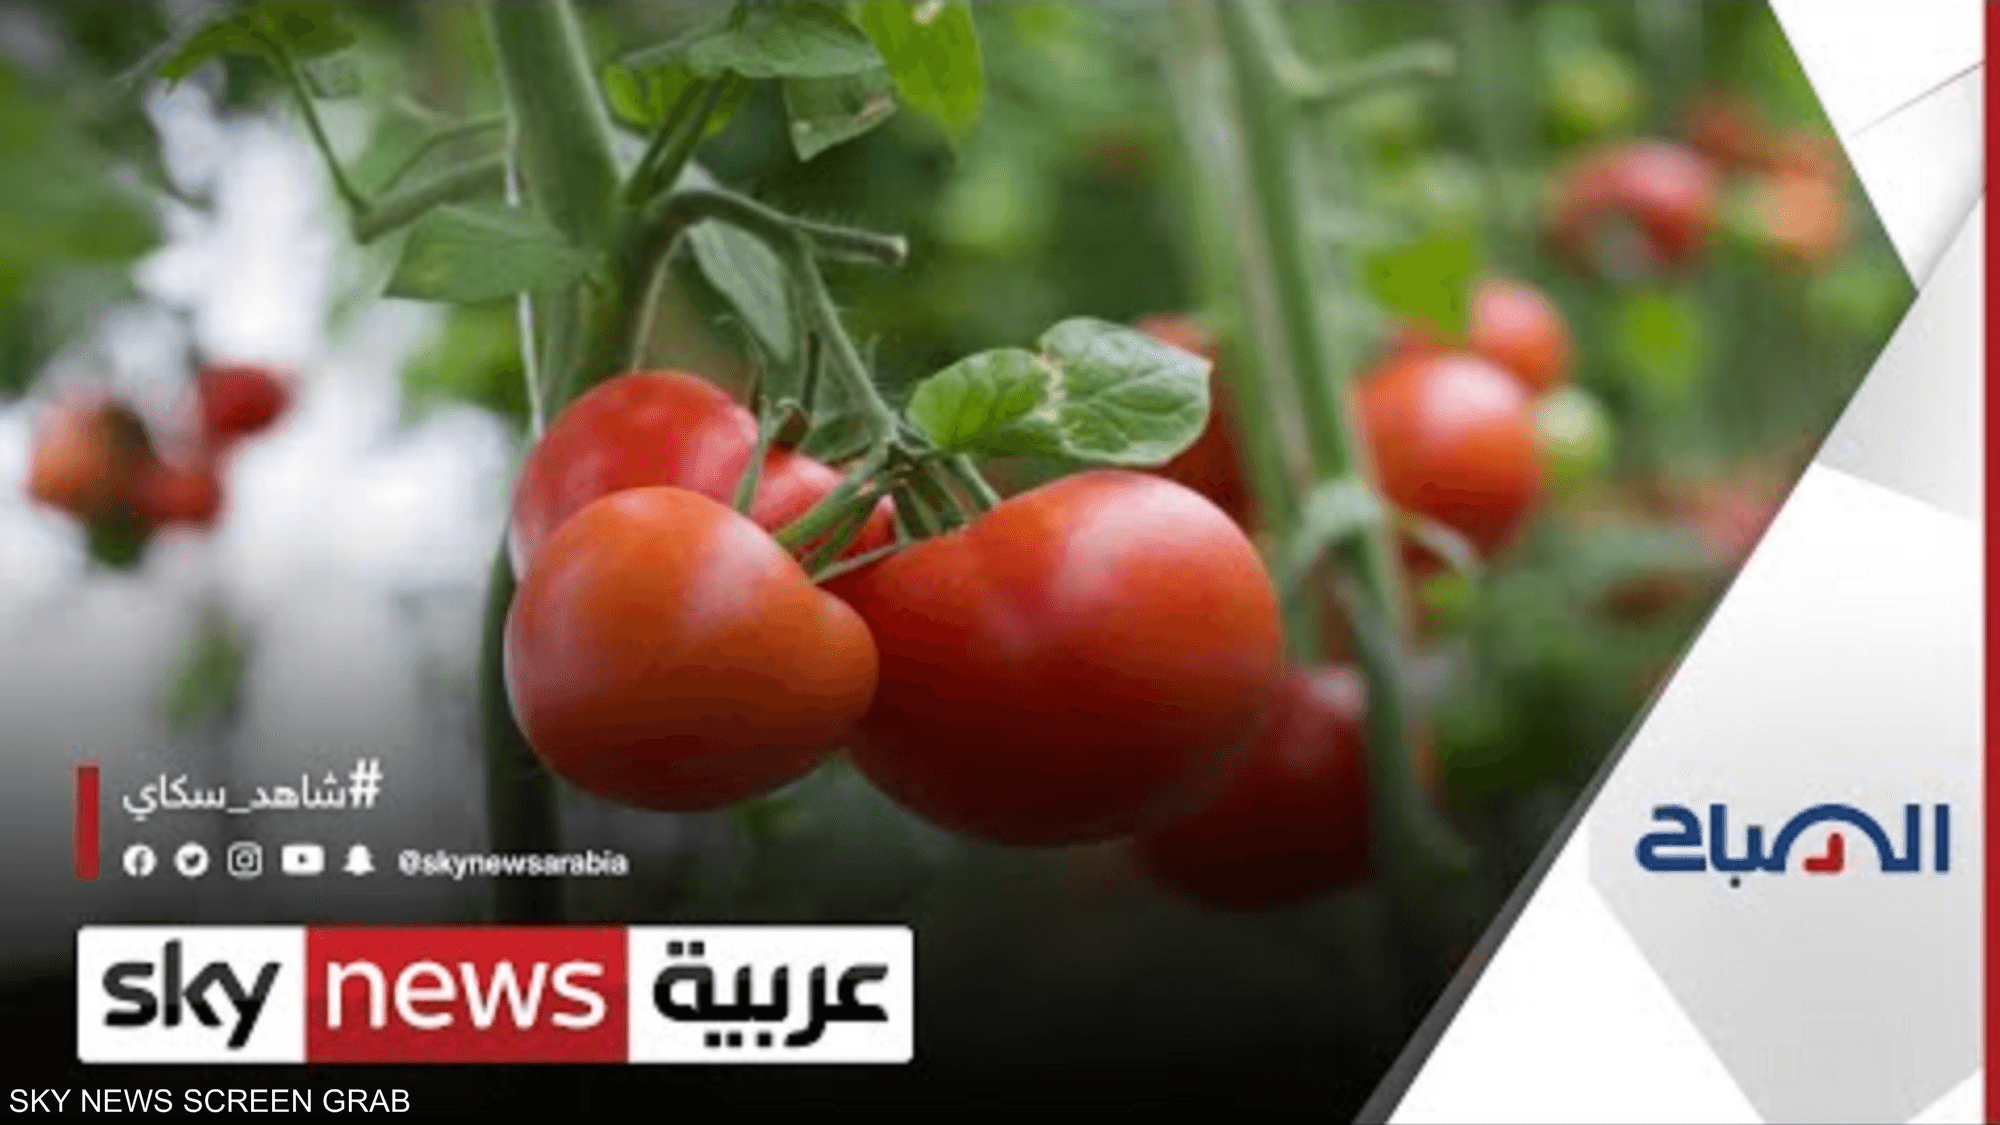 حملة توعوية زراعية لشاب أردني عبر وسائل تواصل اجتماعي